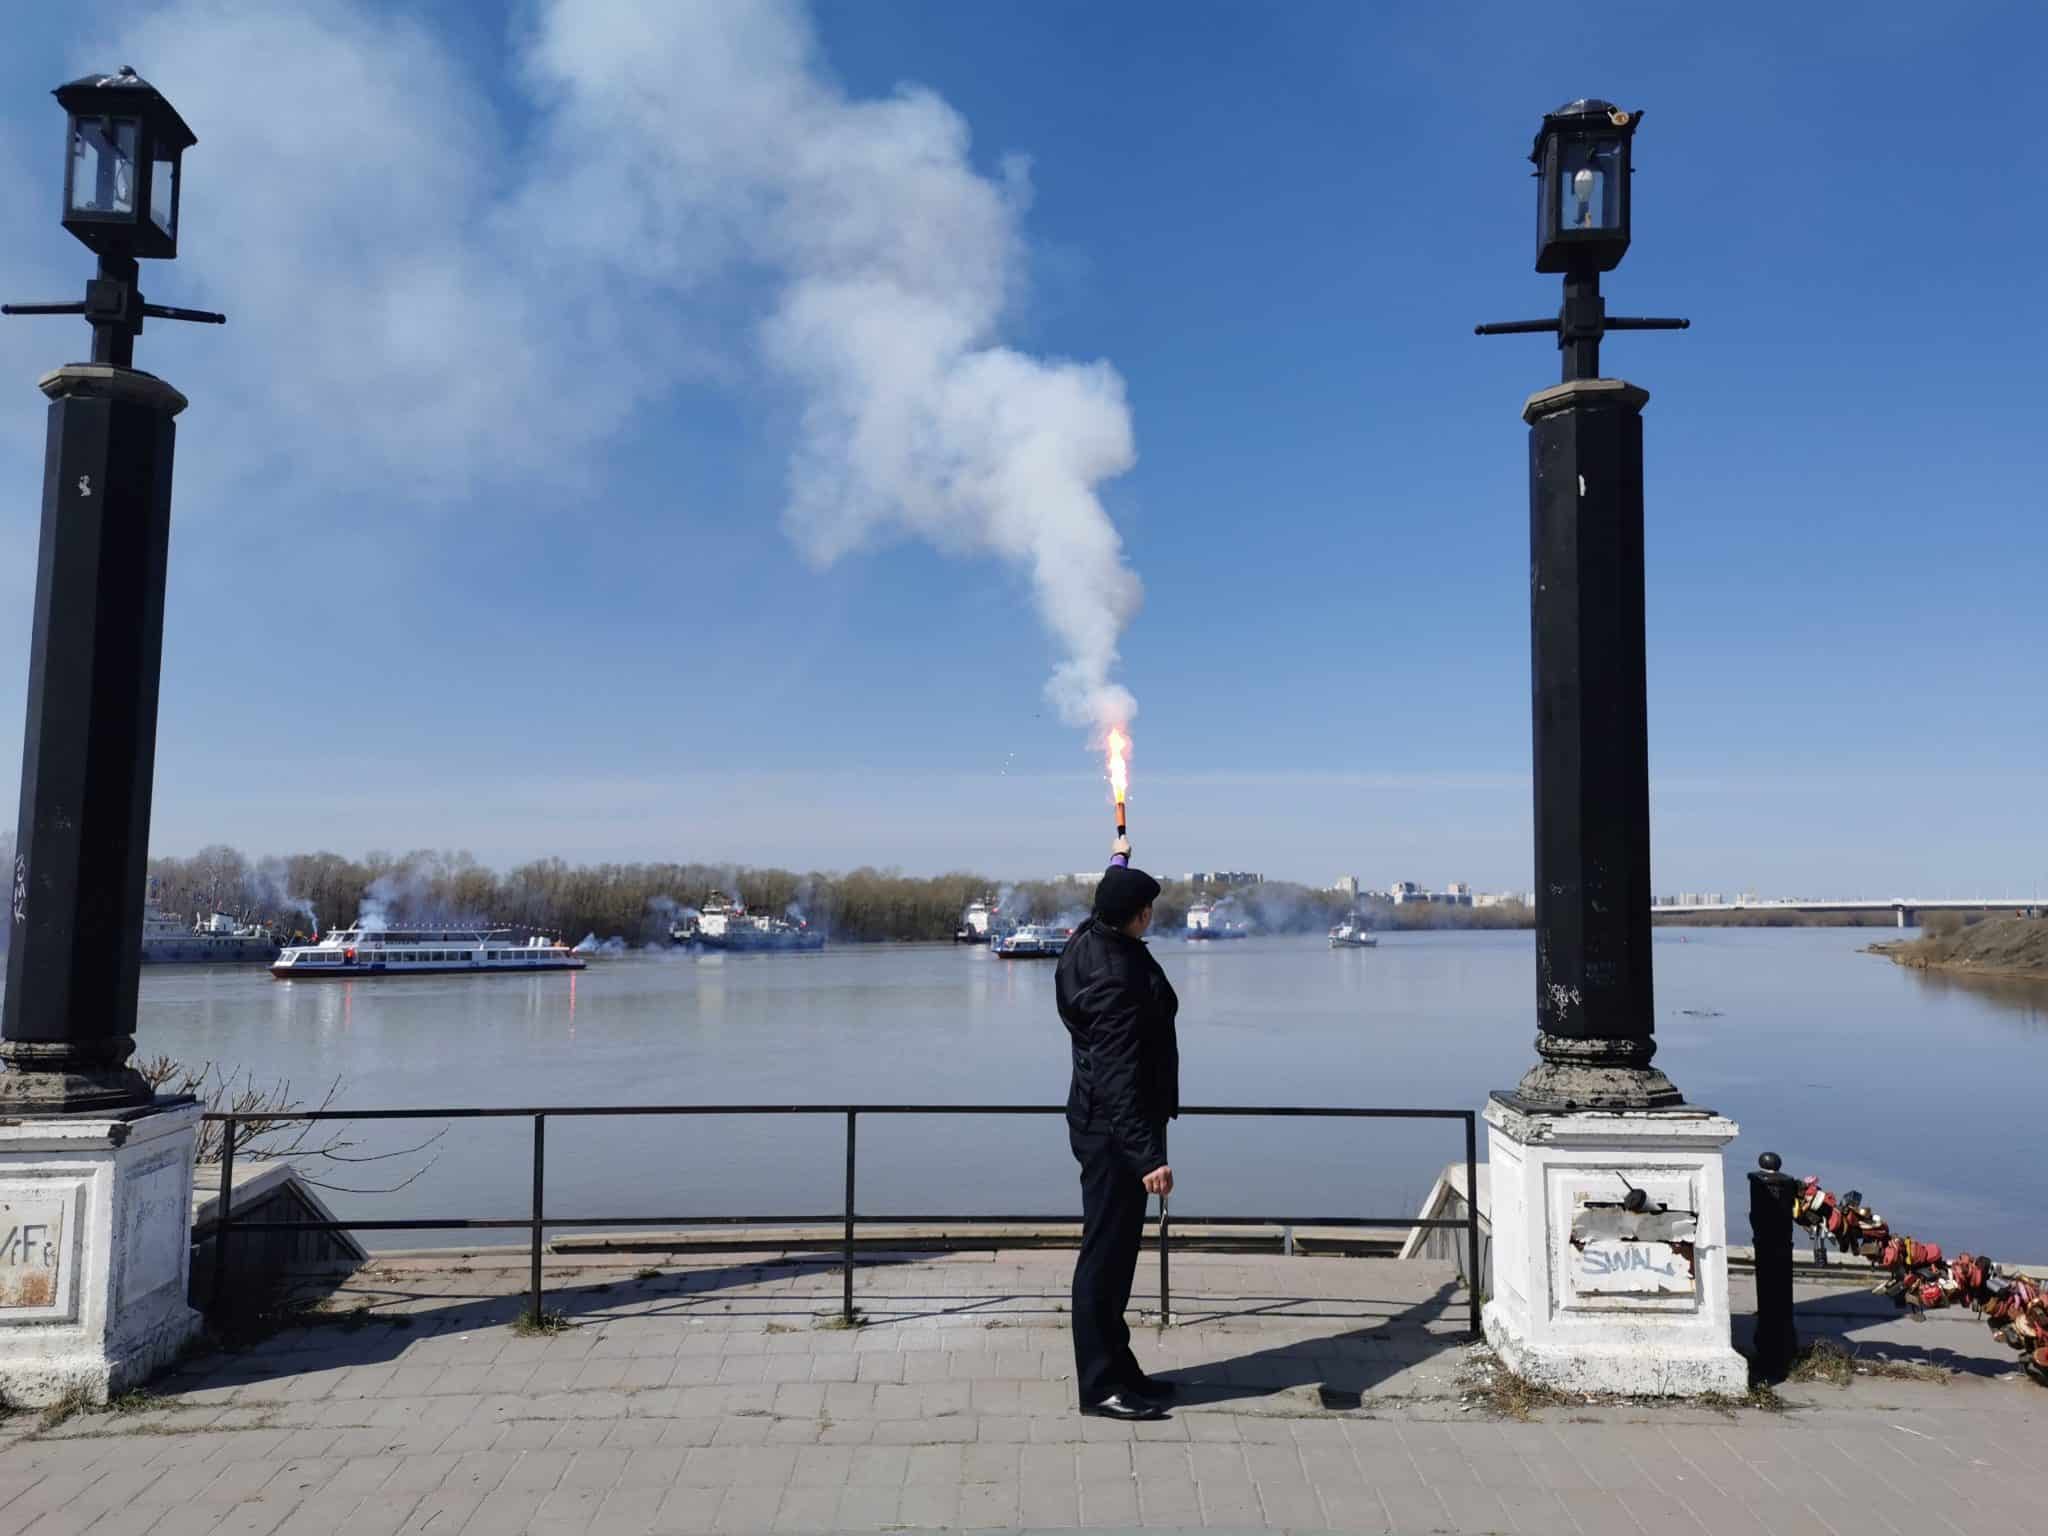 Гул судов, рында и сигнальные огни: как в Омске открыли навигацию по Иртышу - смотрим фото и видео